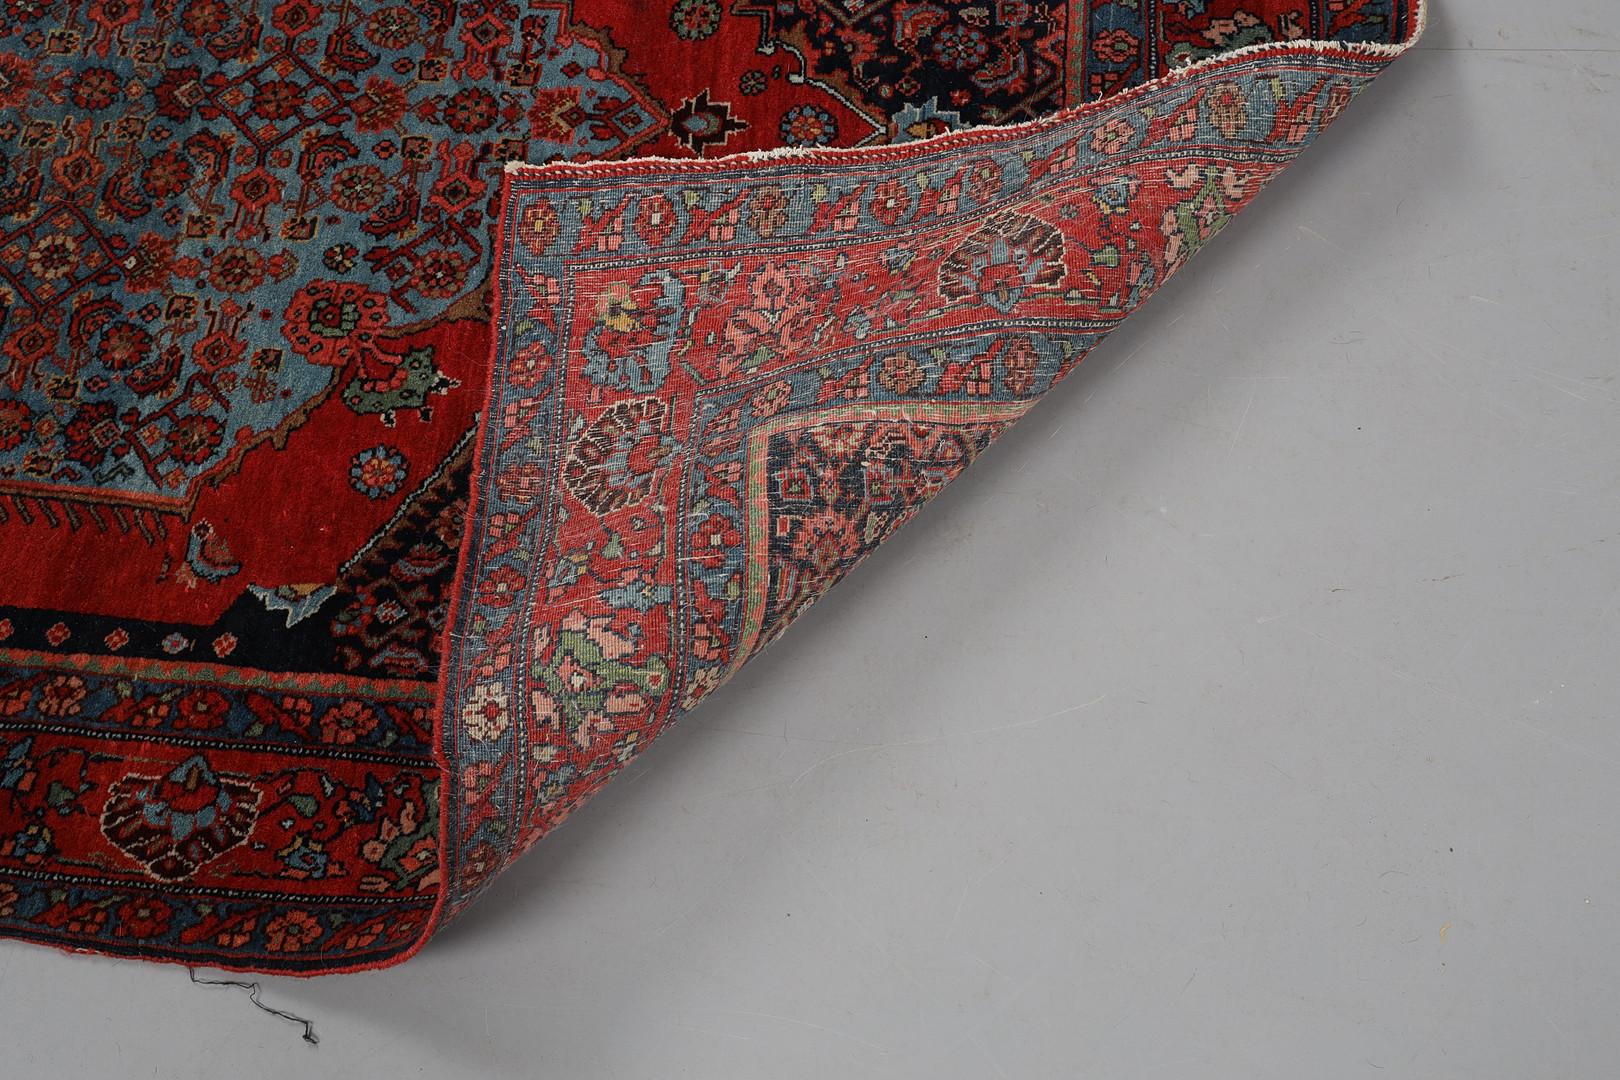 Handgefertigte kaukasische Teppiche gehören zu den begehrtesten unter den rustikalen Teppichen aufgrund ihrer dekorativen Ästhetik mit einzigartigen und räumlichen Variationen von All-Over-Medaillon-Designs und dekorativen Bordüren. Dieses Stück